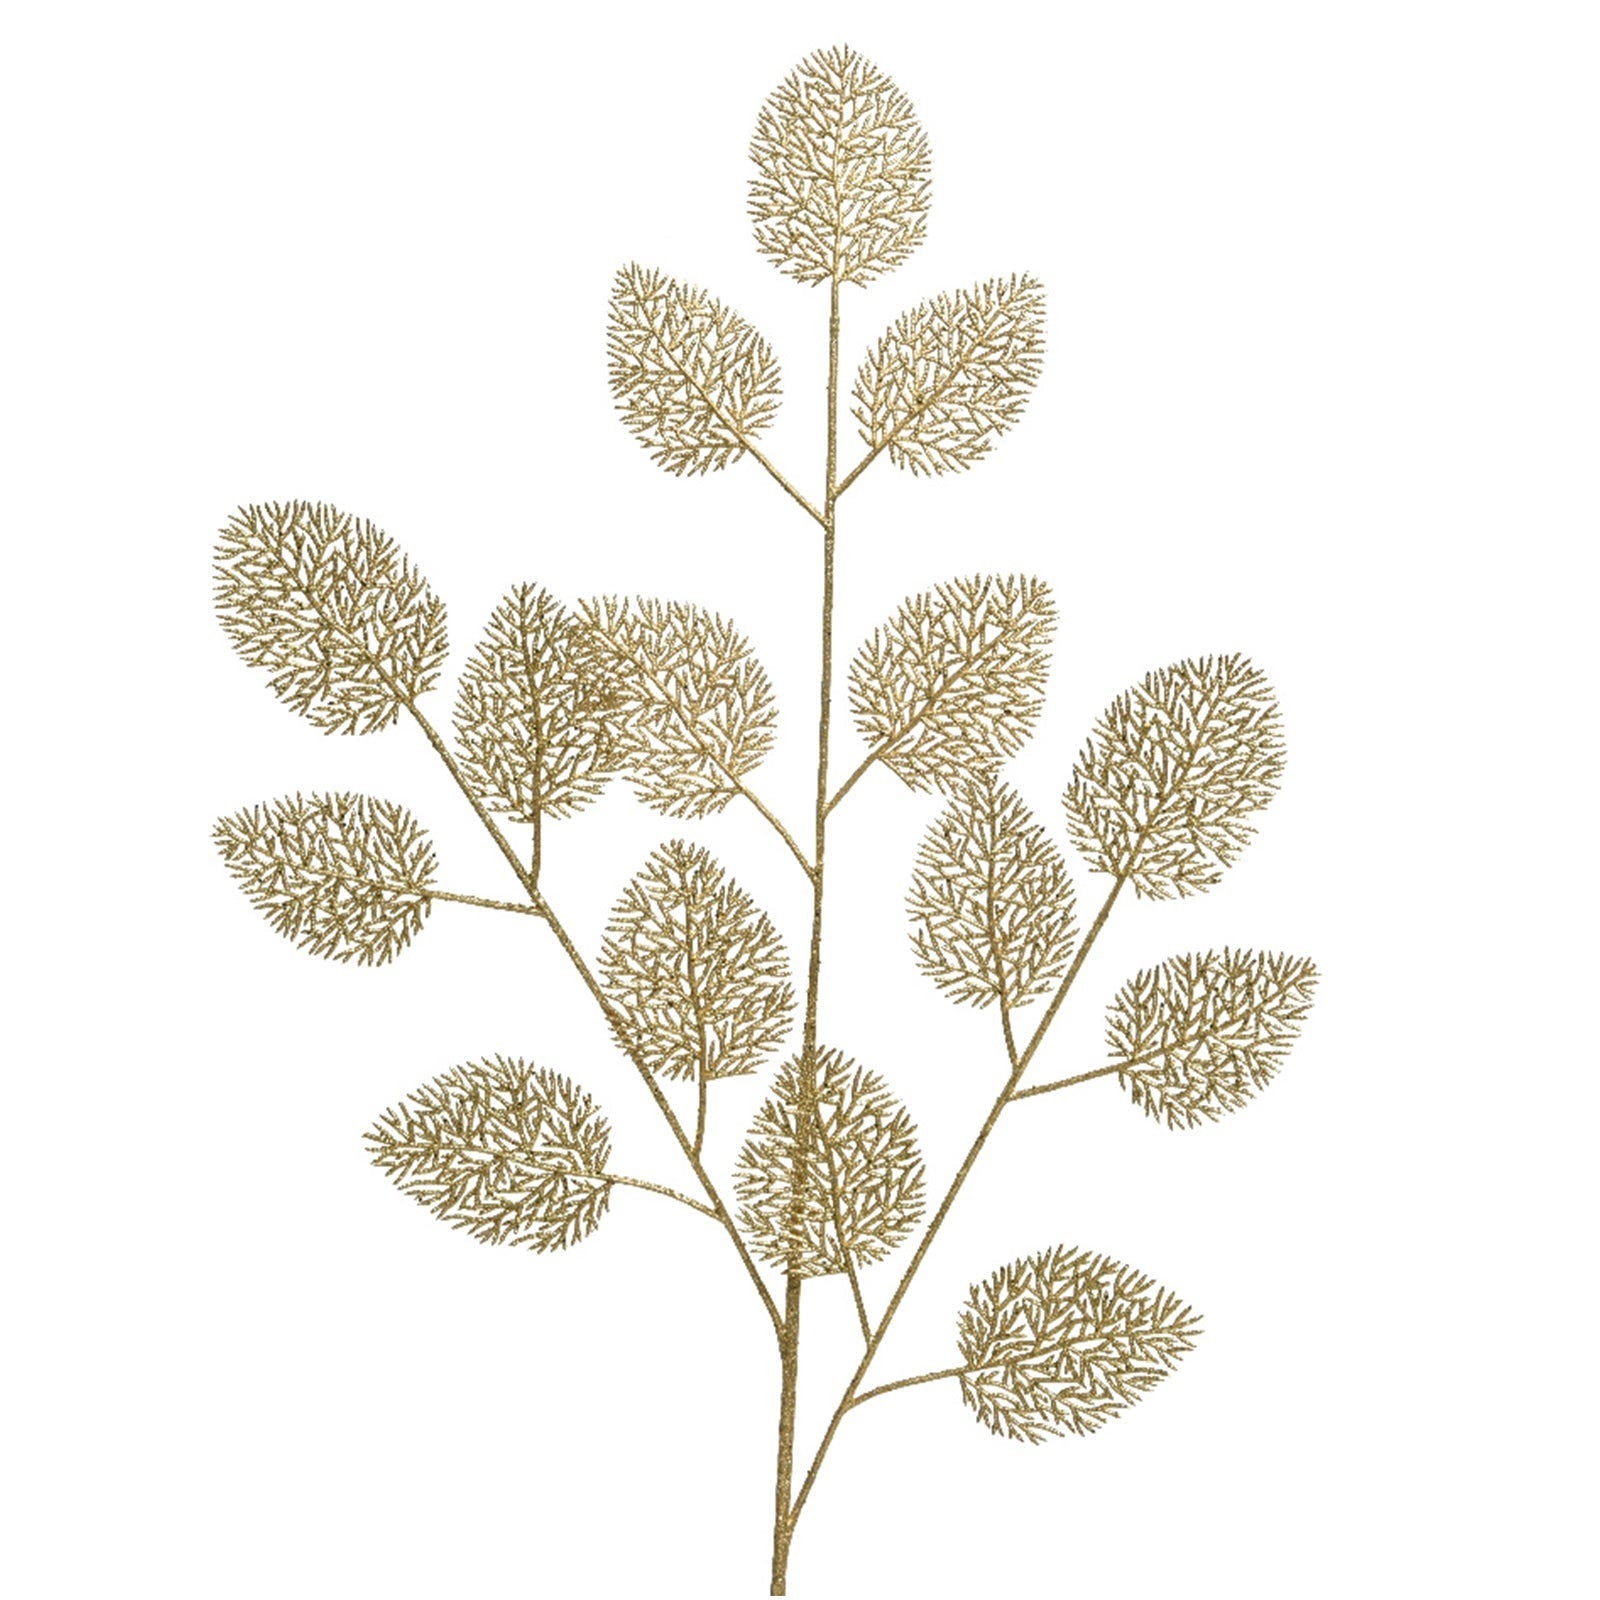 Branche décorative dorée pour décorations et compositions florales